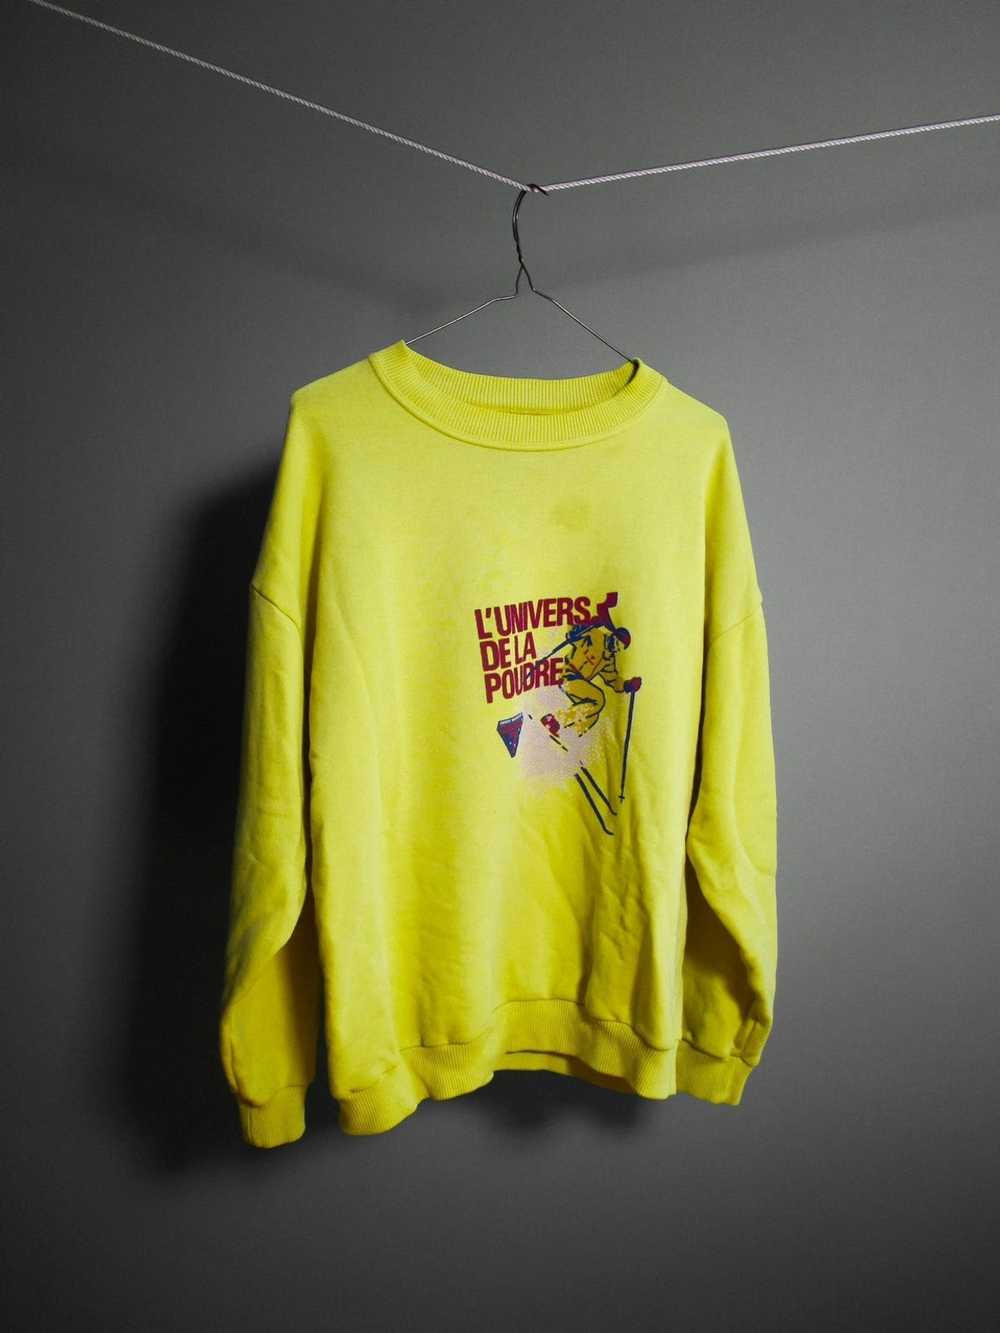 Vintage Neon Yellow Ski Sweatshirt - image 2